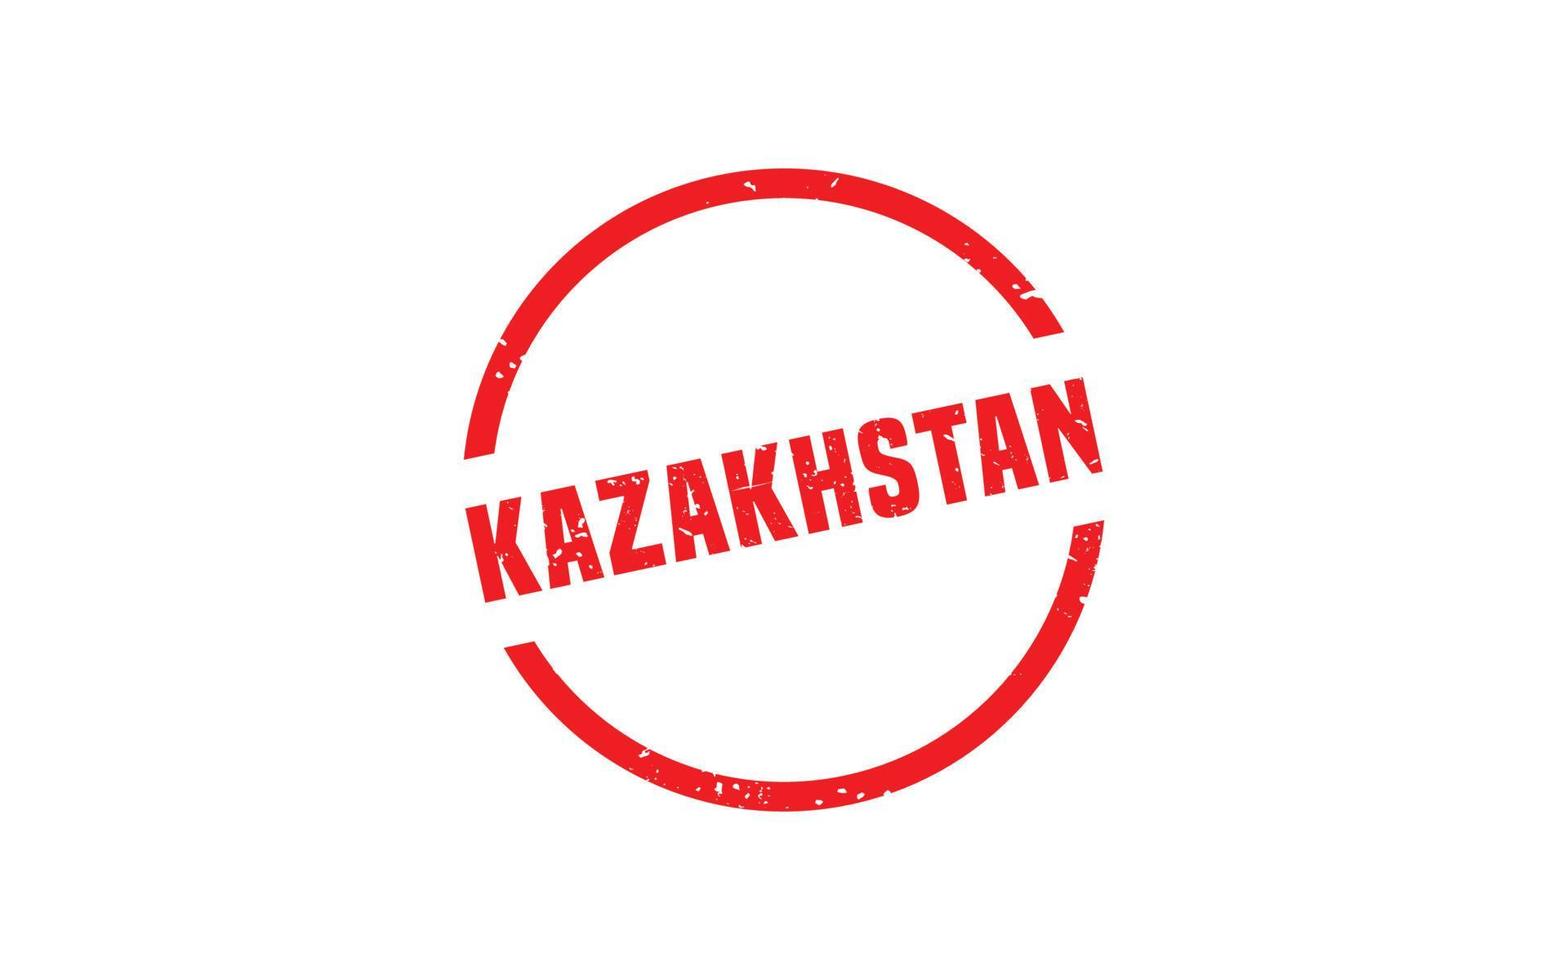 caucho de sello de kazajstán con estilo grunge sobre fondo blanco vector